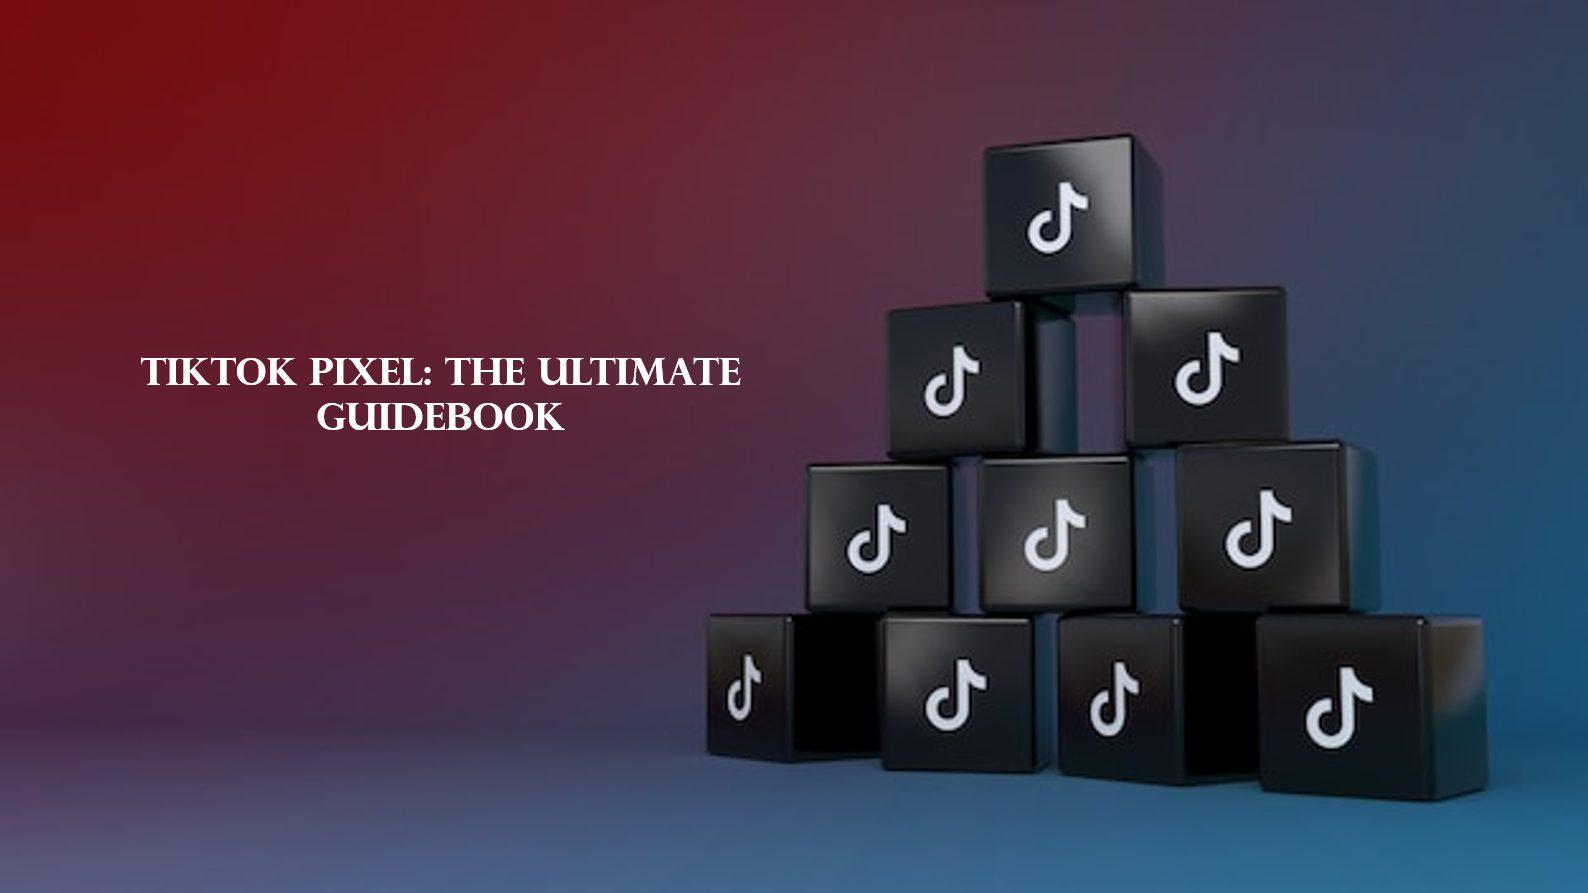 TikTok Pixel: The Ultimate Guidebook